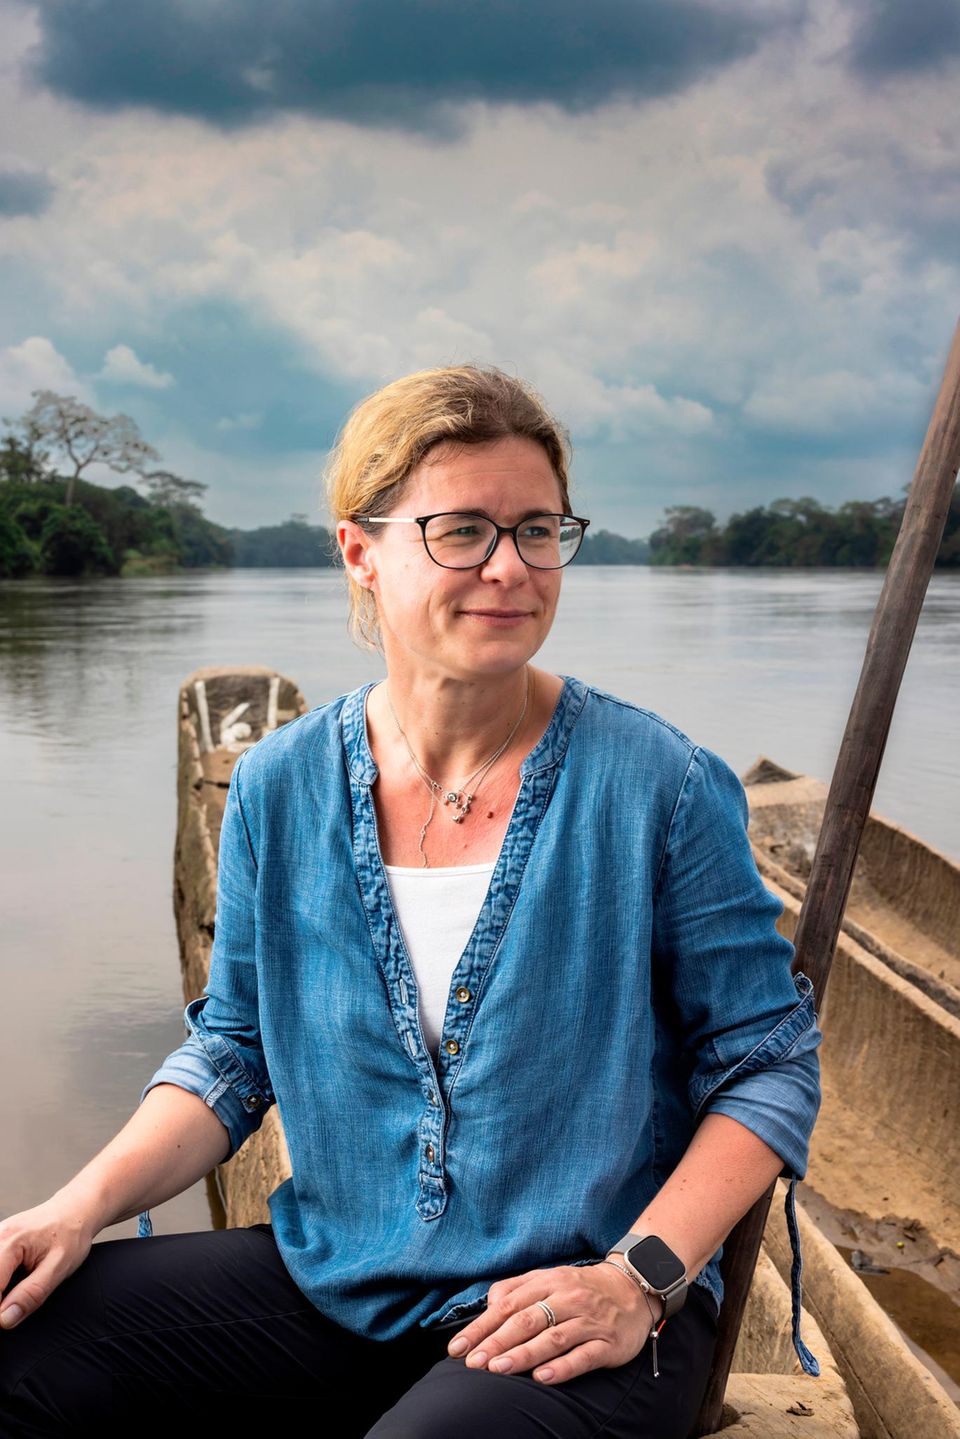 Die Biologin Sabine Specht inspiziert Stellen am Fluss, wo die Krankheit meist ihren Anfang nimmt. Denn an seichten Ufern legt die Kriebelmücke ihre Eier ab, das Insekt, das die Flussblindheit verbreitet. Specht widmet ihre Arbeit seit fast 20 Jahren dieser Krankheit